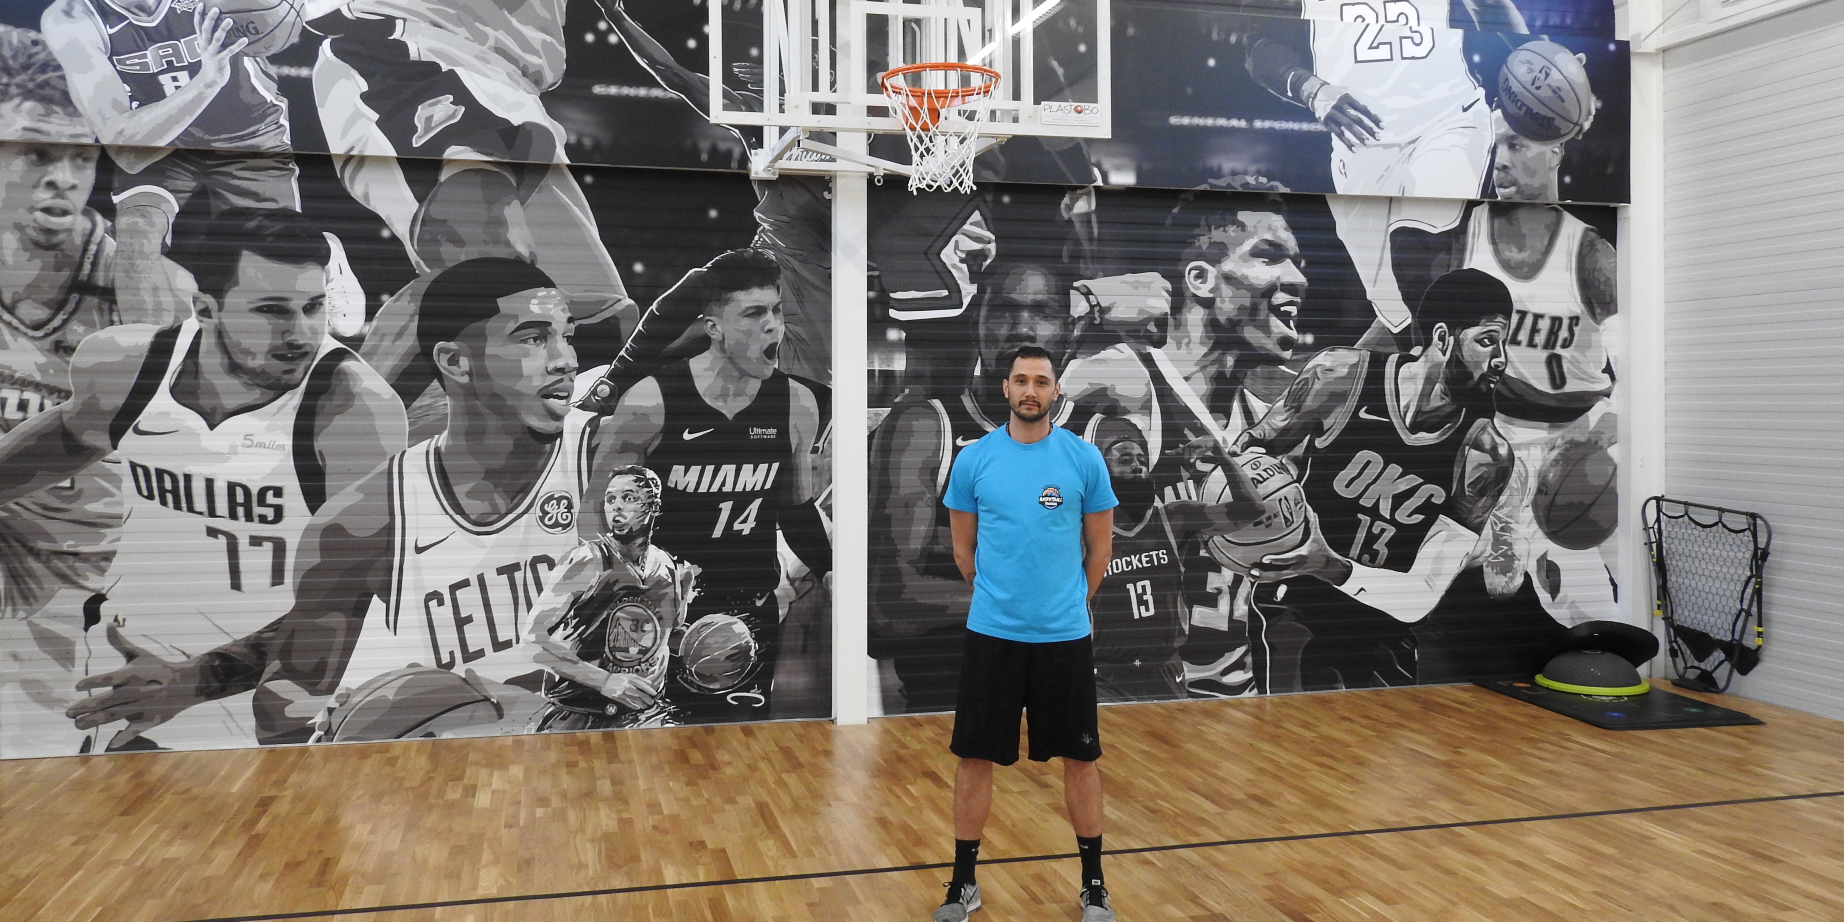 Egyéni képzés Szolnokon - Megnyitotta kapuit az Evolution Basketball Training